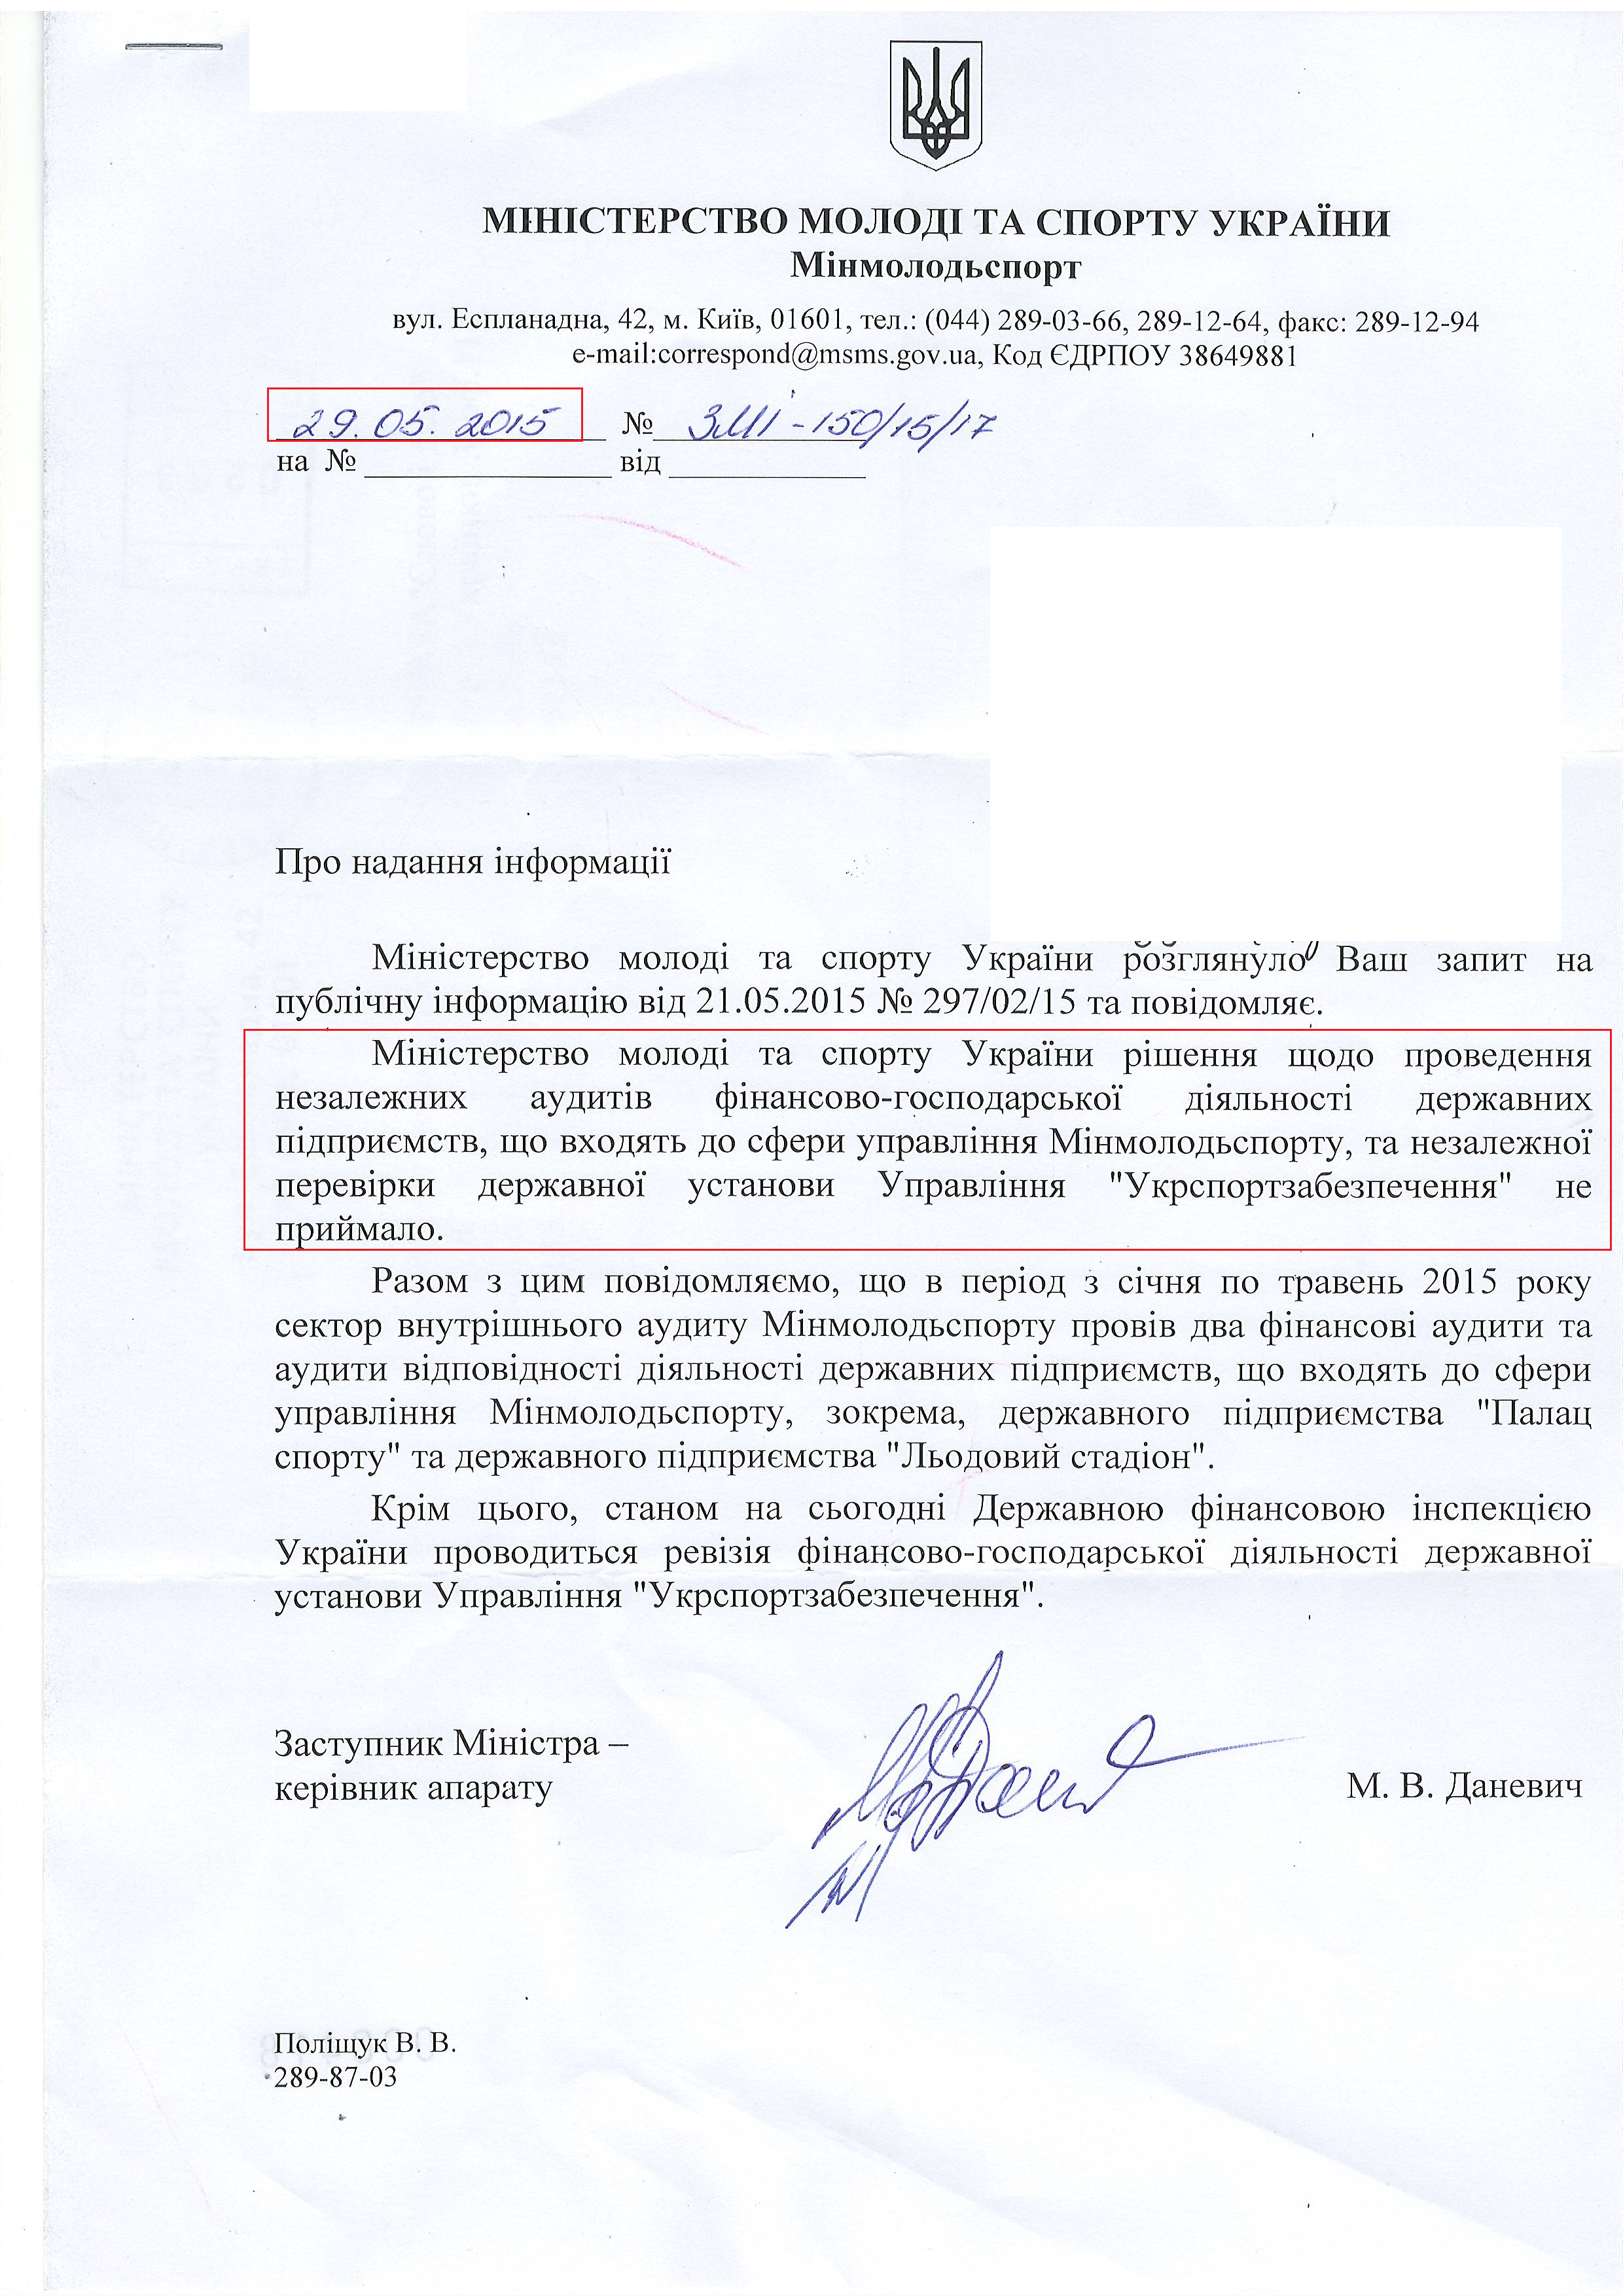 лист міністерства молоді та спорту України від 29 травня 2015 року